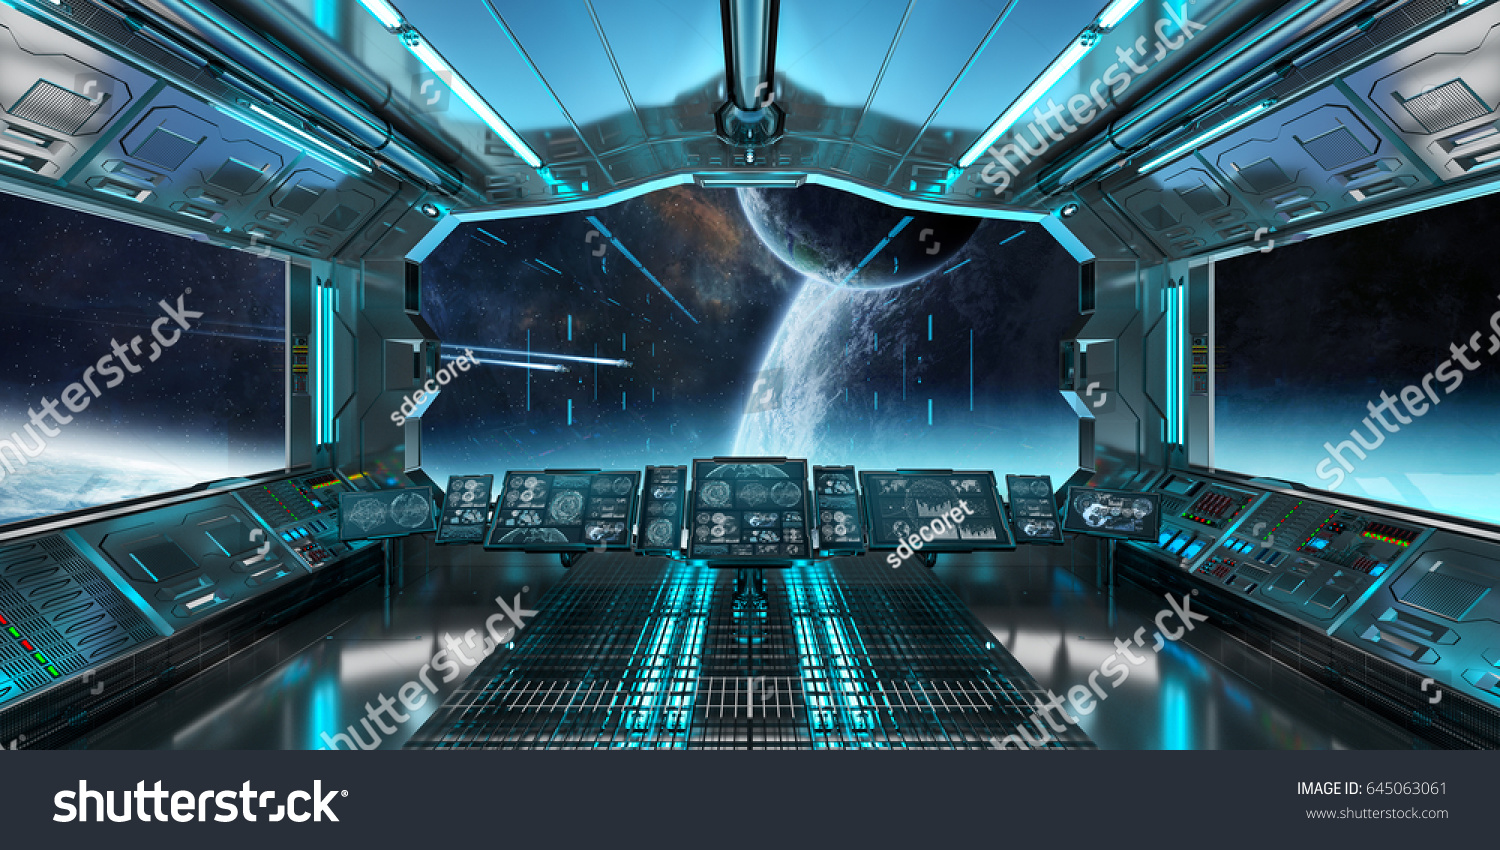 宇宙船の内部と宇宙空間と遠隔惑星のビューnasaが提供するこの画像のエレメントを3dレンダリングするシステム のイラスト素材